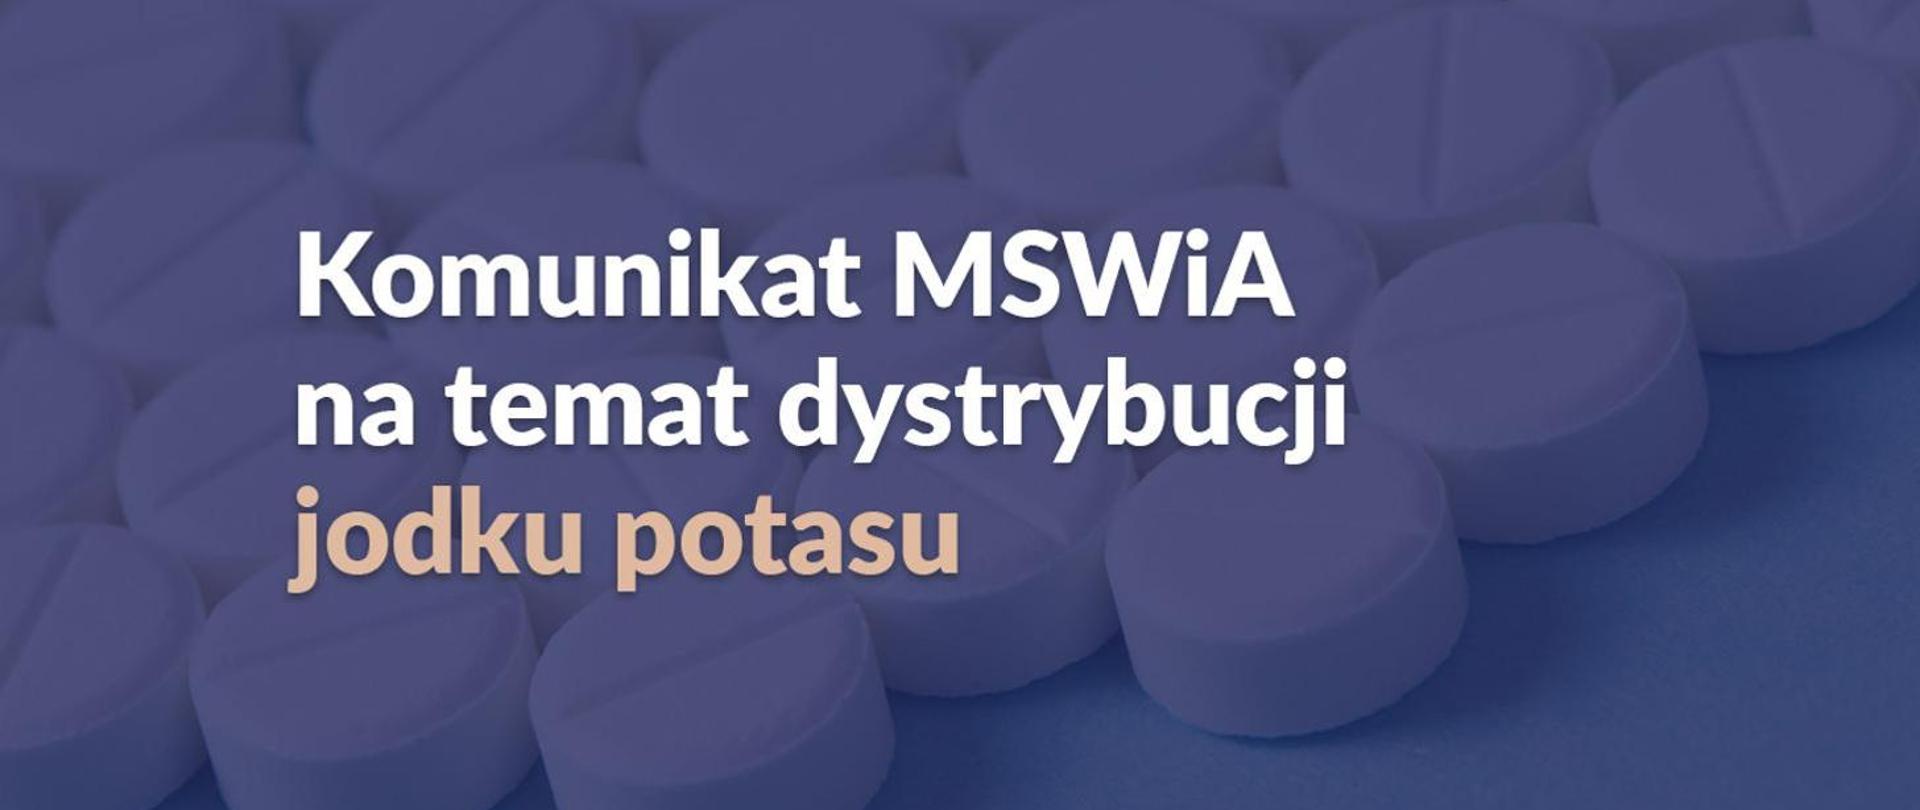 napis na niebieskiej planszy Komunikat MSWiA na temat dystrybucji jodku potasu